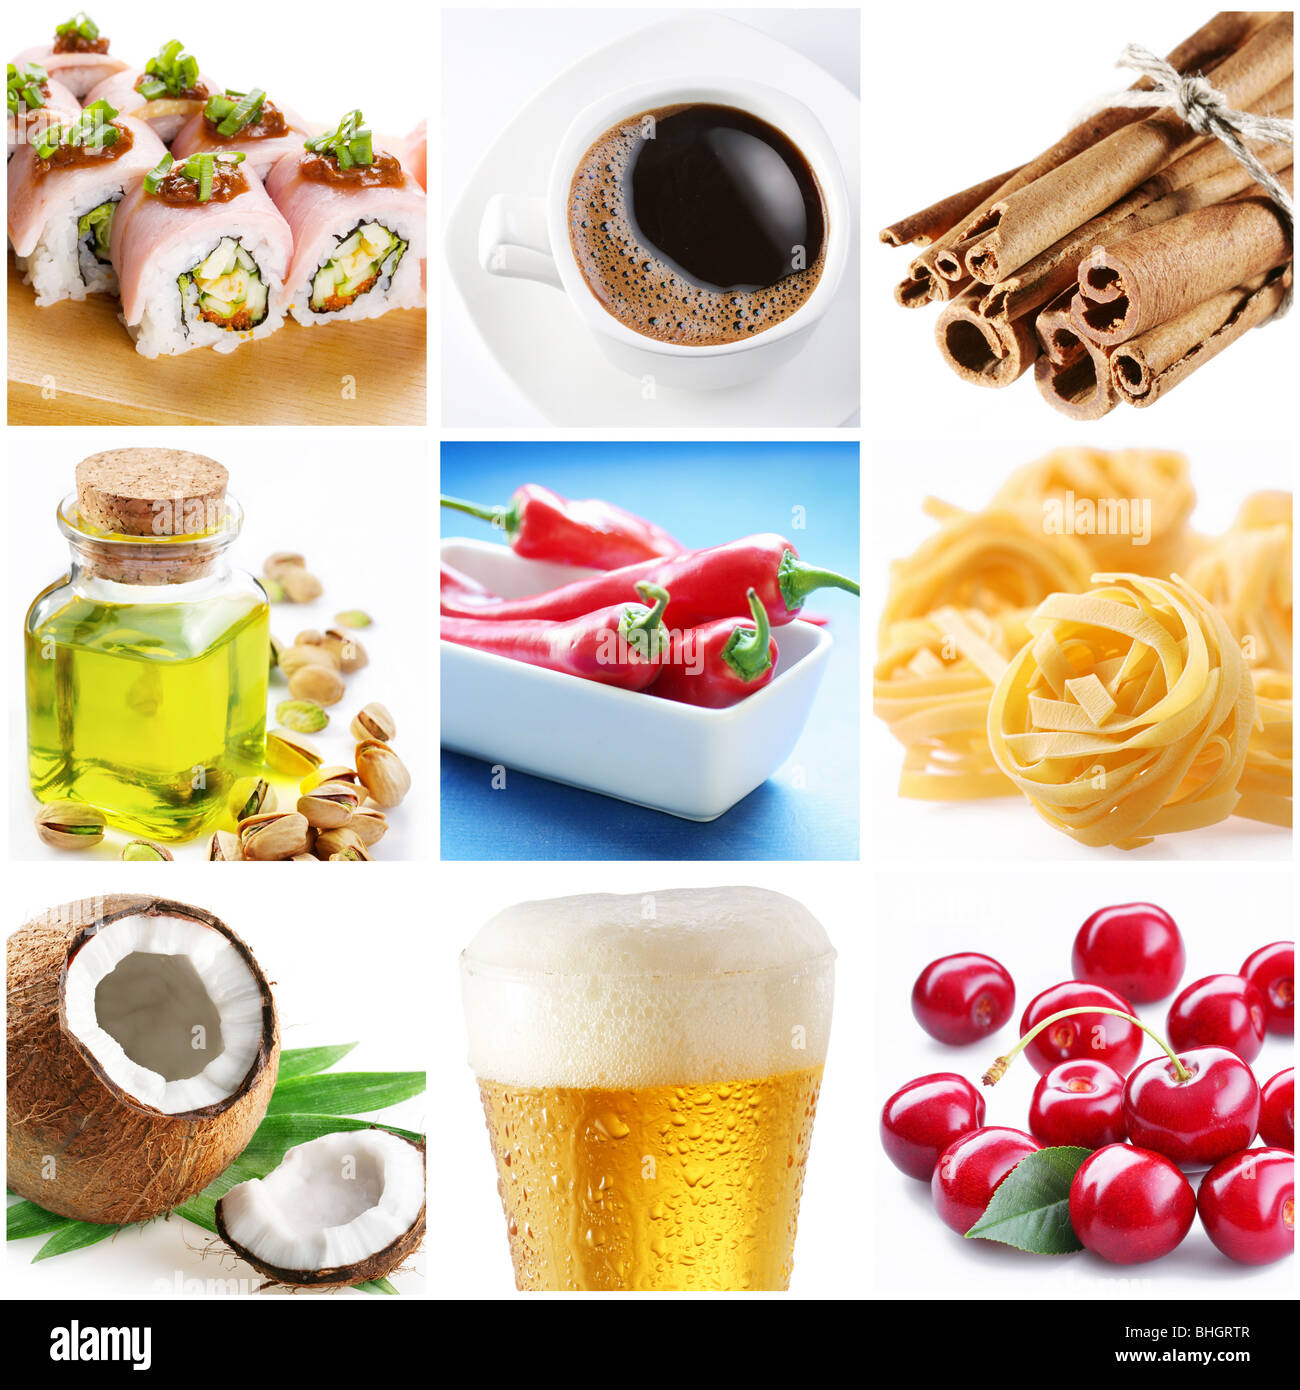 Sammlung von Bildern zum Thema "Lebensmittel" Stockfoto